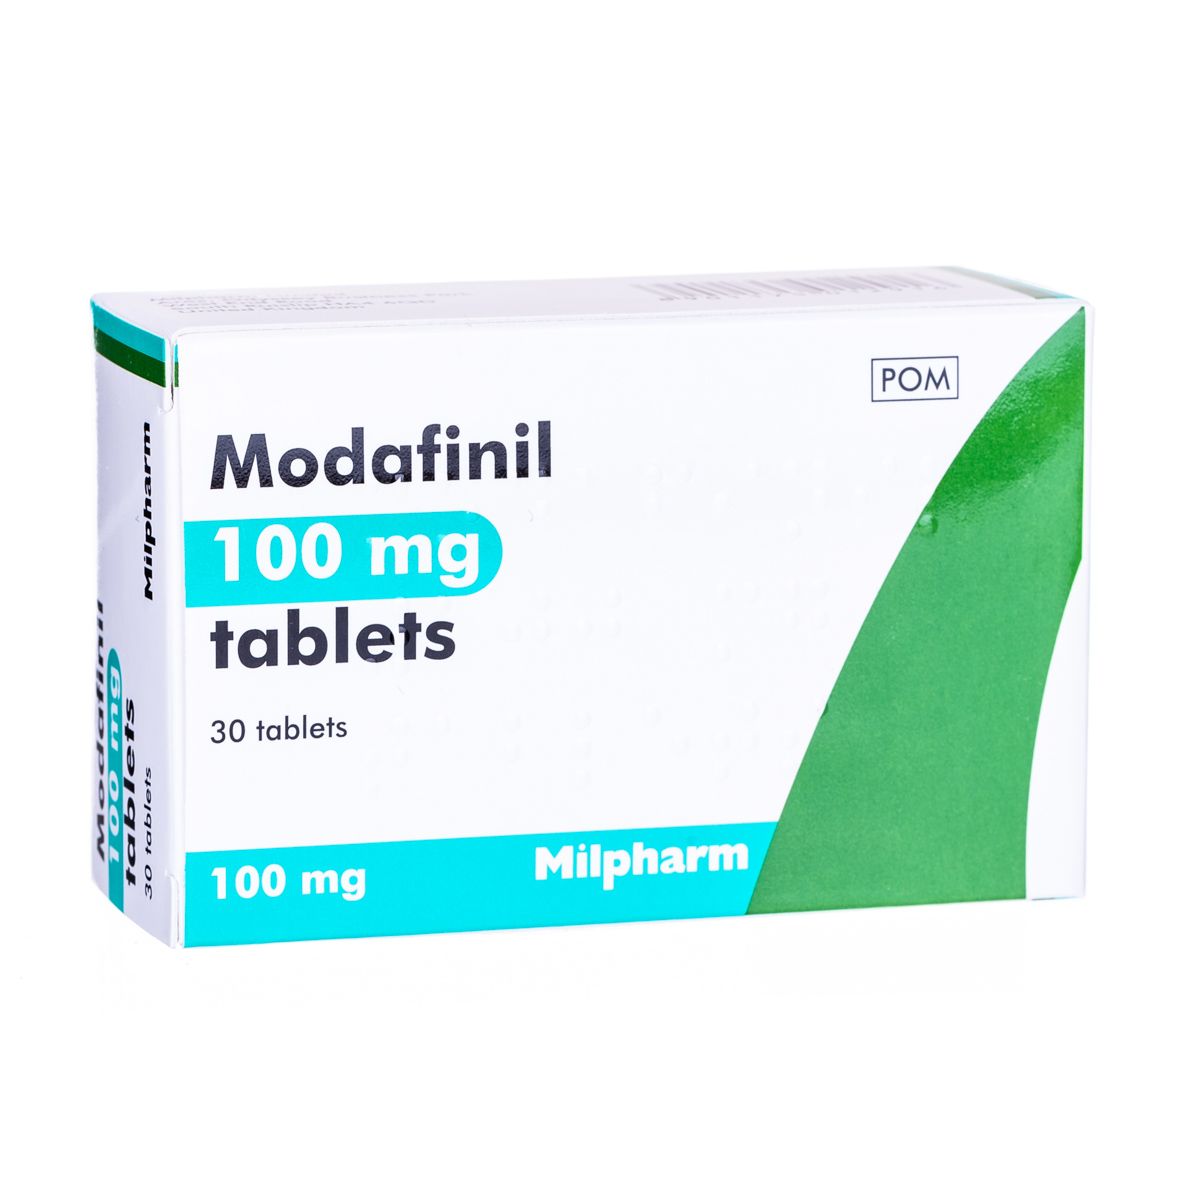 دواعي استعمال دواء مودافينيل Modafinil